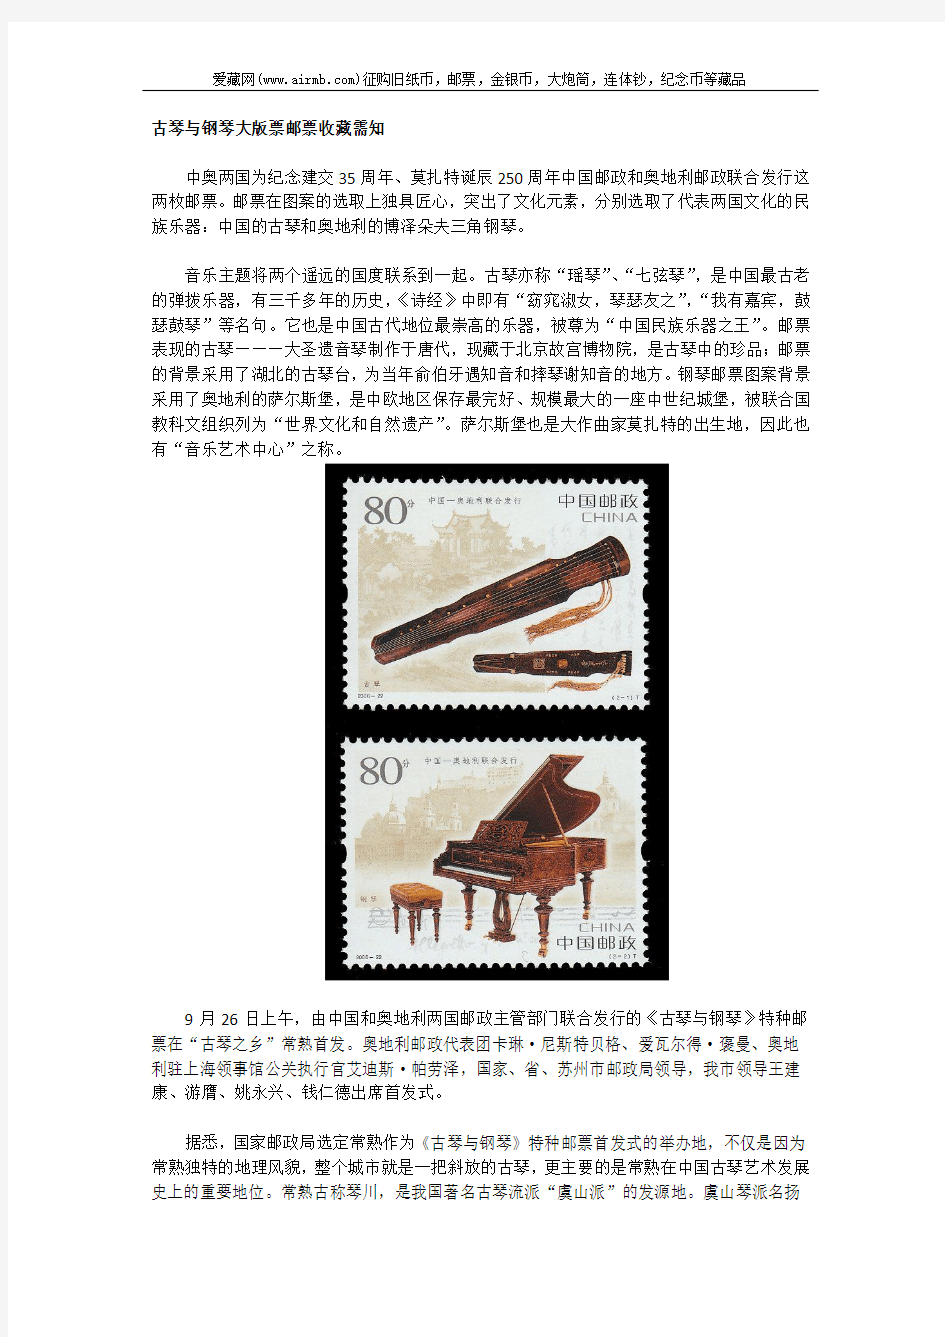 古琴与钢琴大版票邮票收藏需知